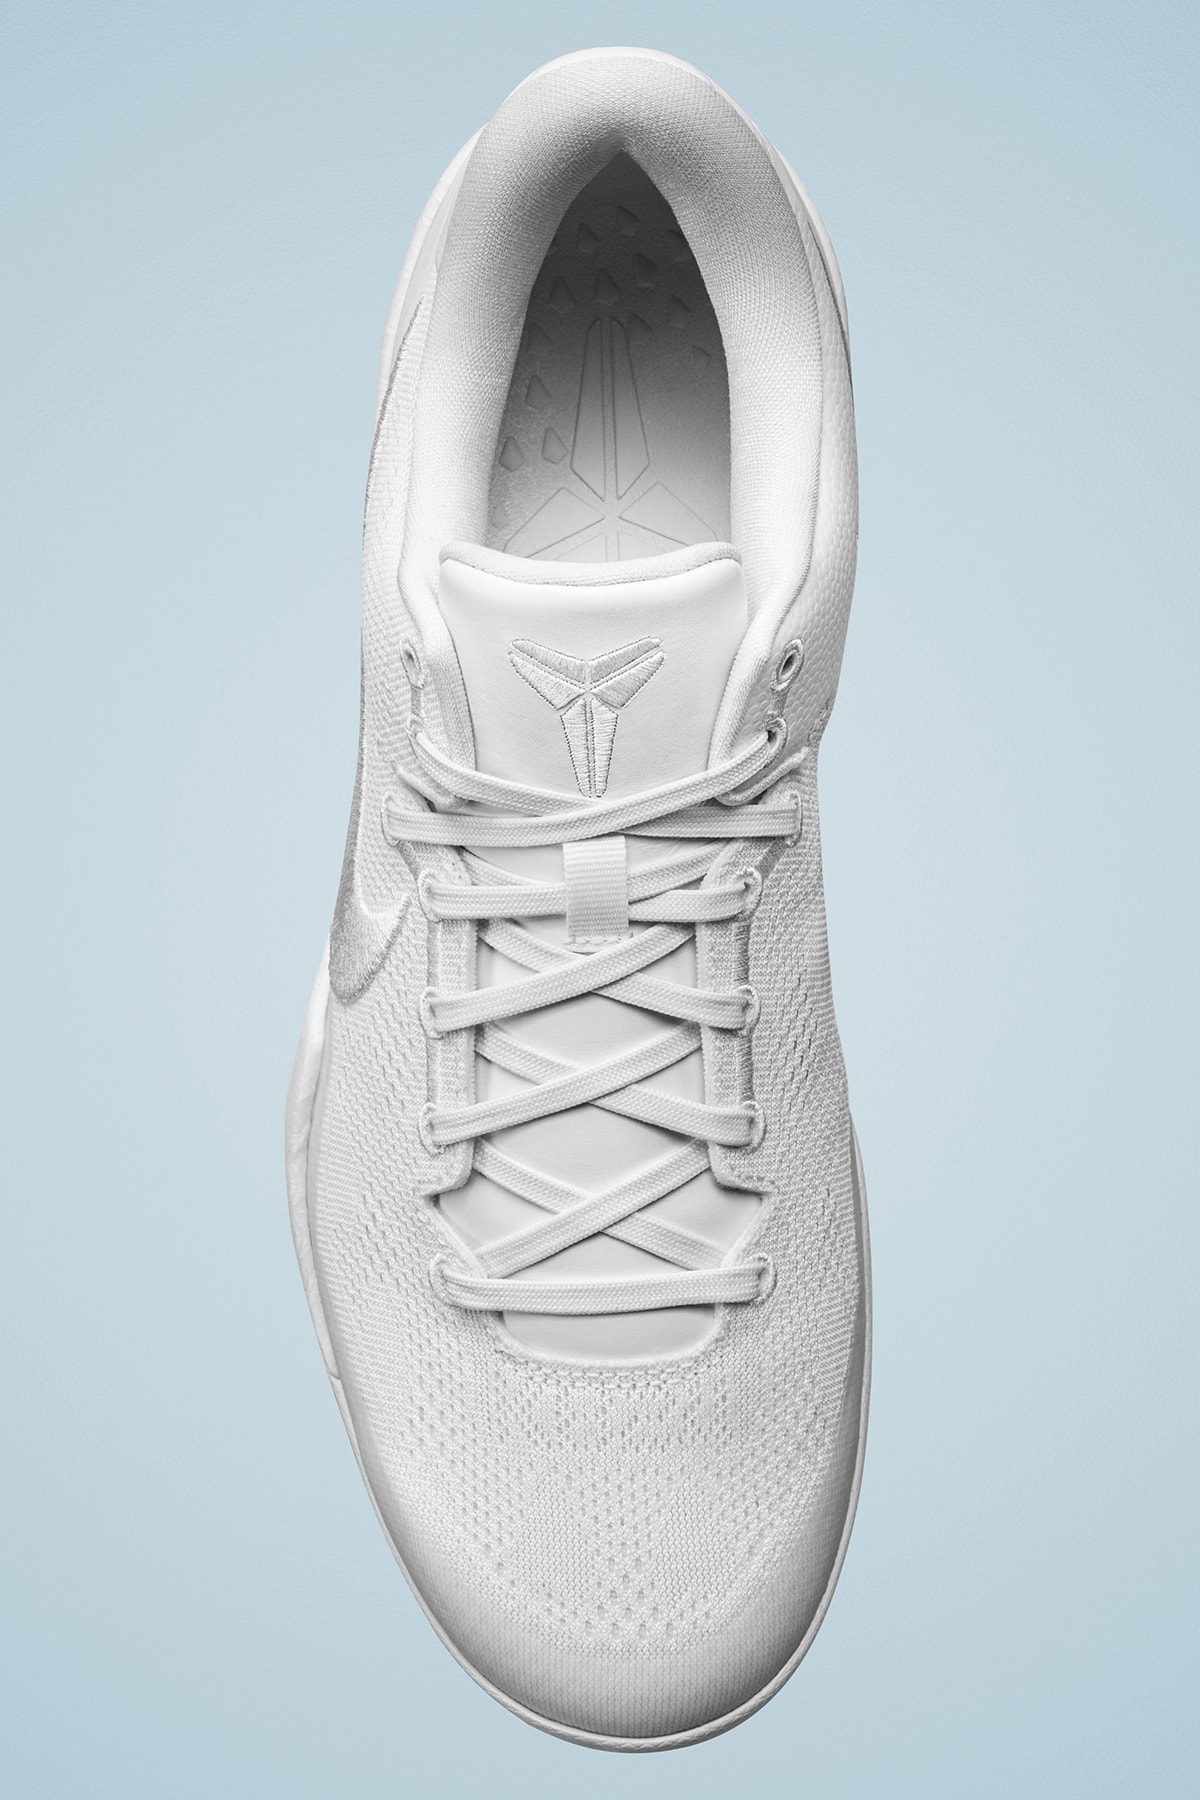 ナイキがコービー・ブライアントの新モデル コービー 8 プロトロ “ヘイロー” を正式に発表 Nike Kobe 8 Protro Triple halo release info